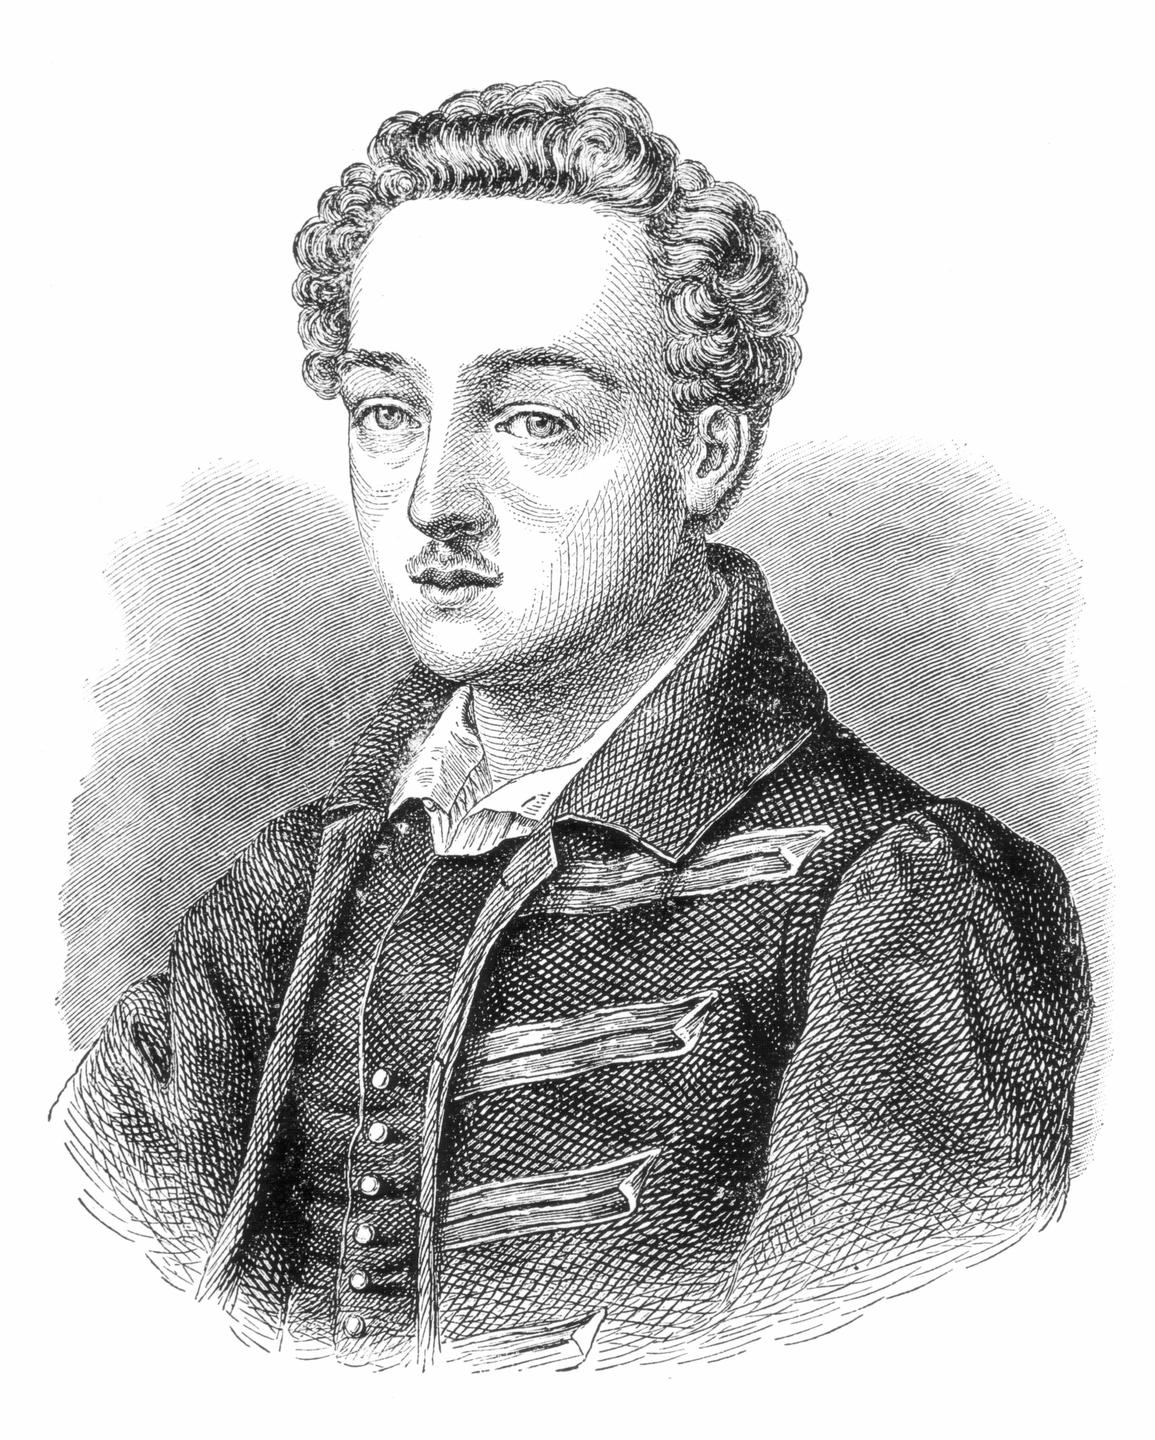 Holzstich von Georg Büchner als jungem Mann.